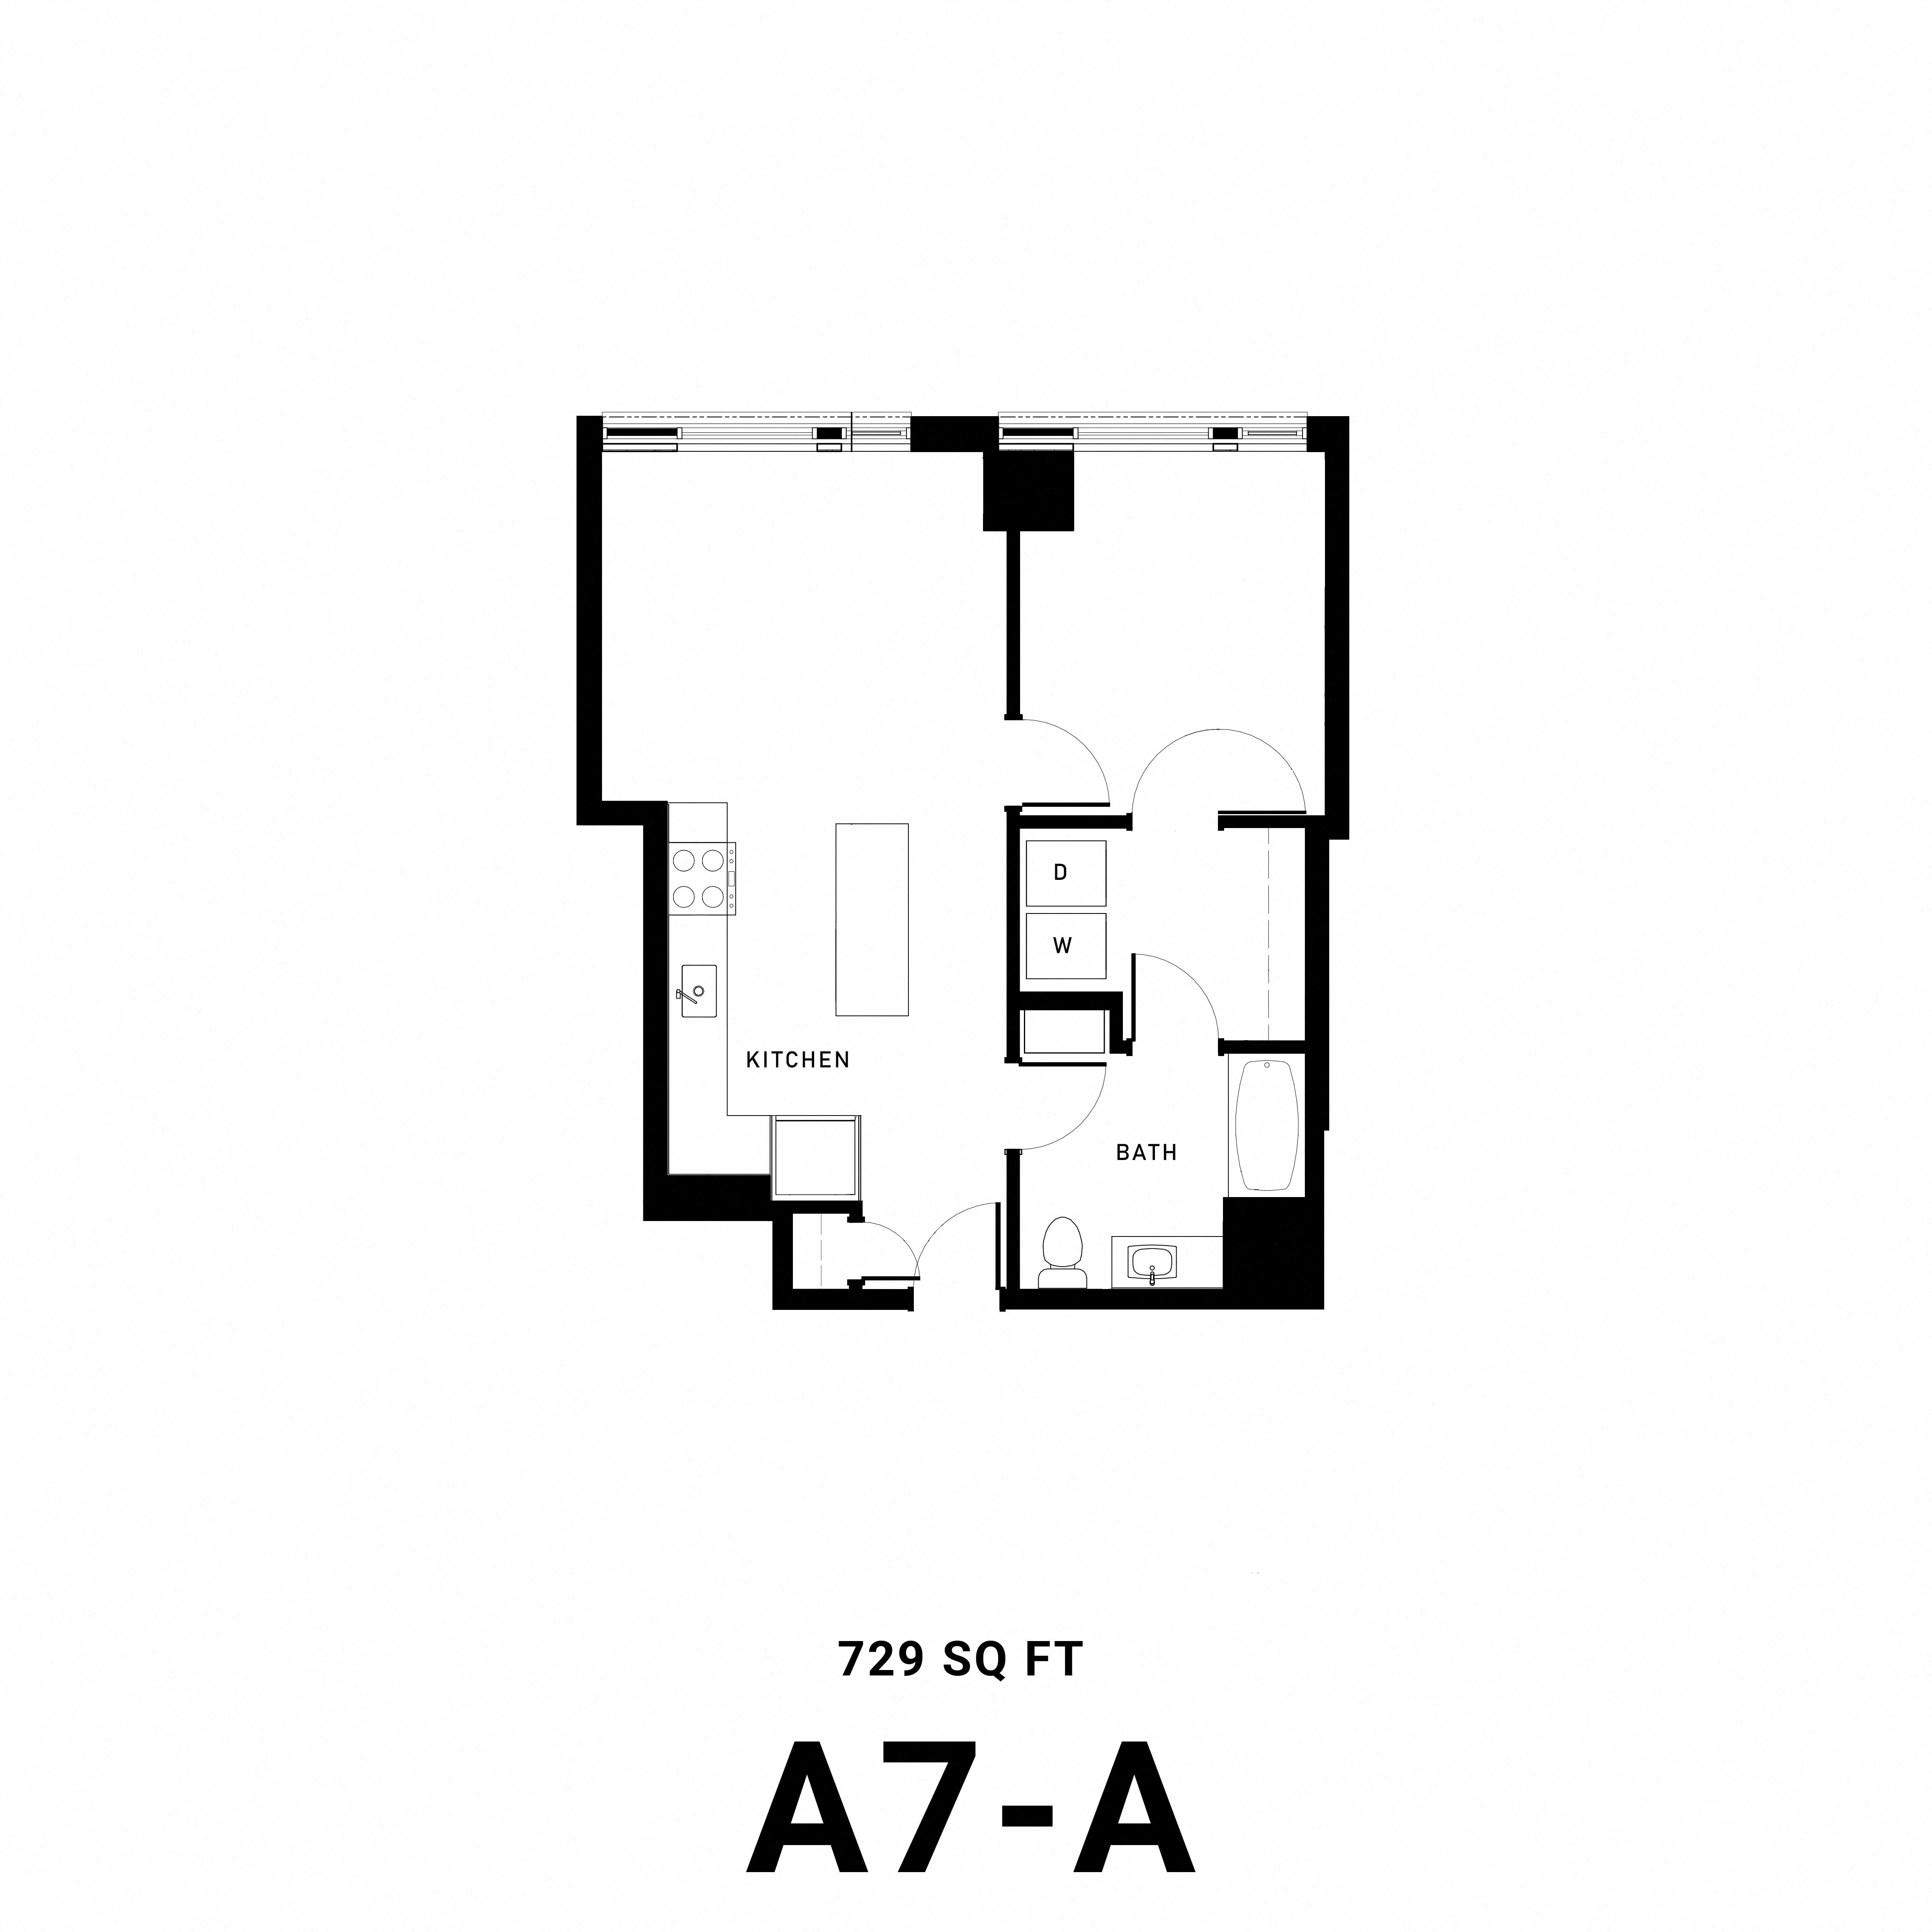 Floorplan A7A